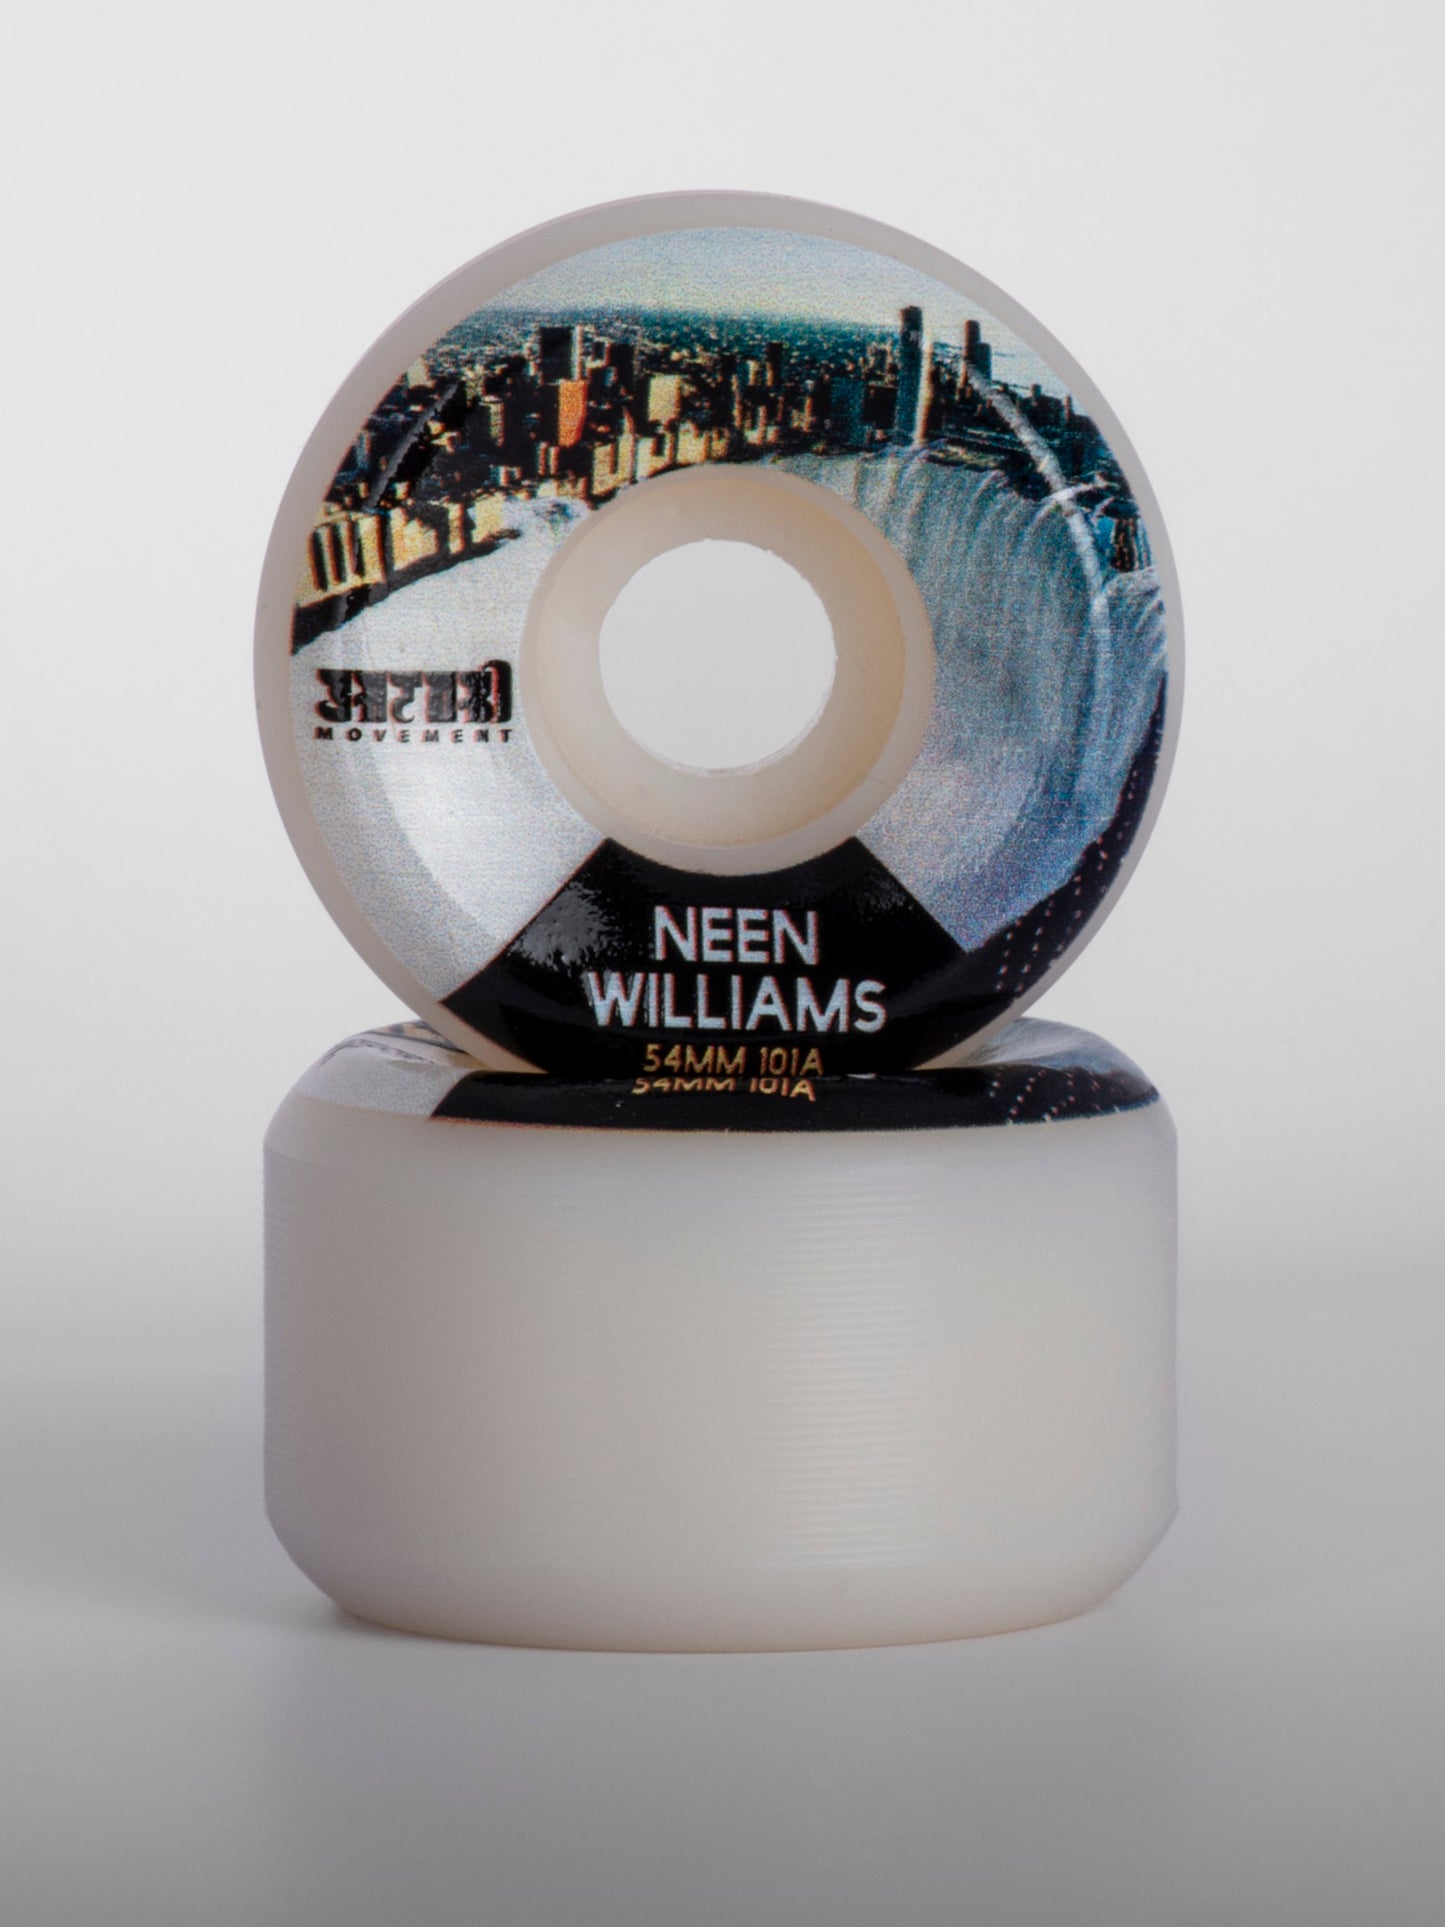 ล้อ SATORI Artist Series - Neen Williams 54mm/101a